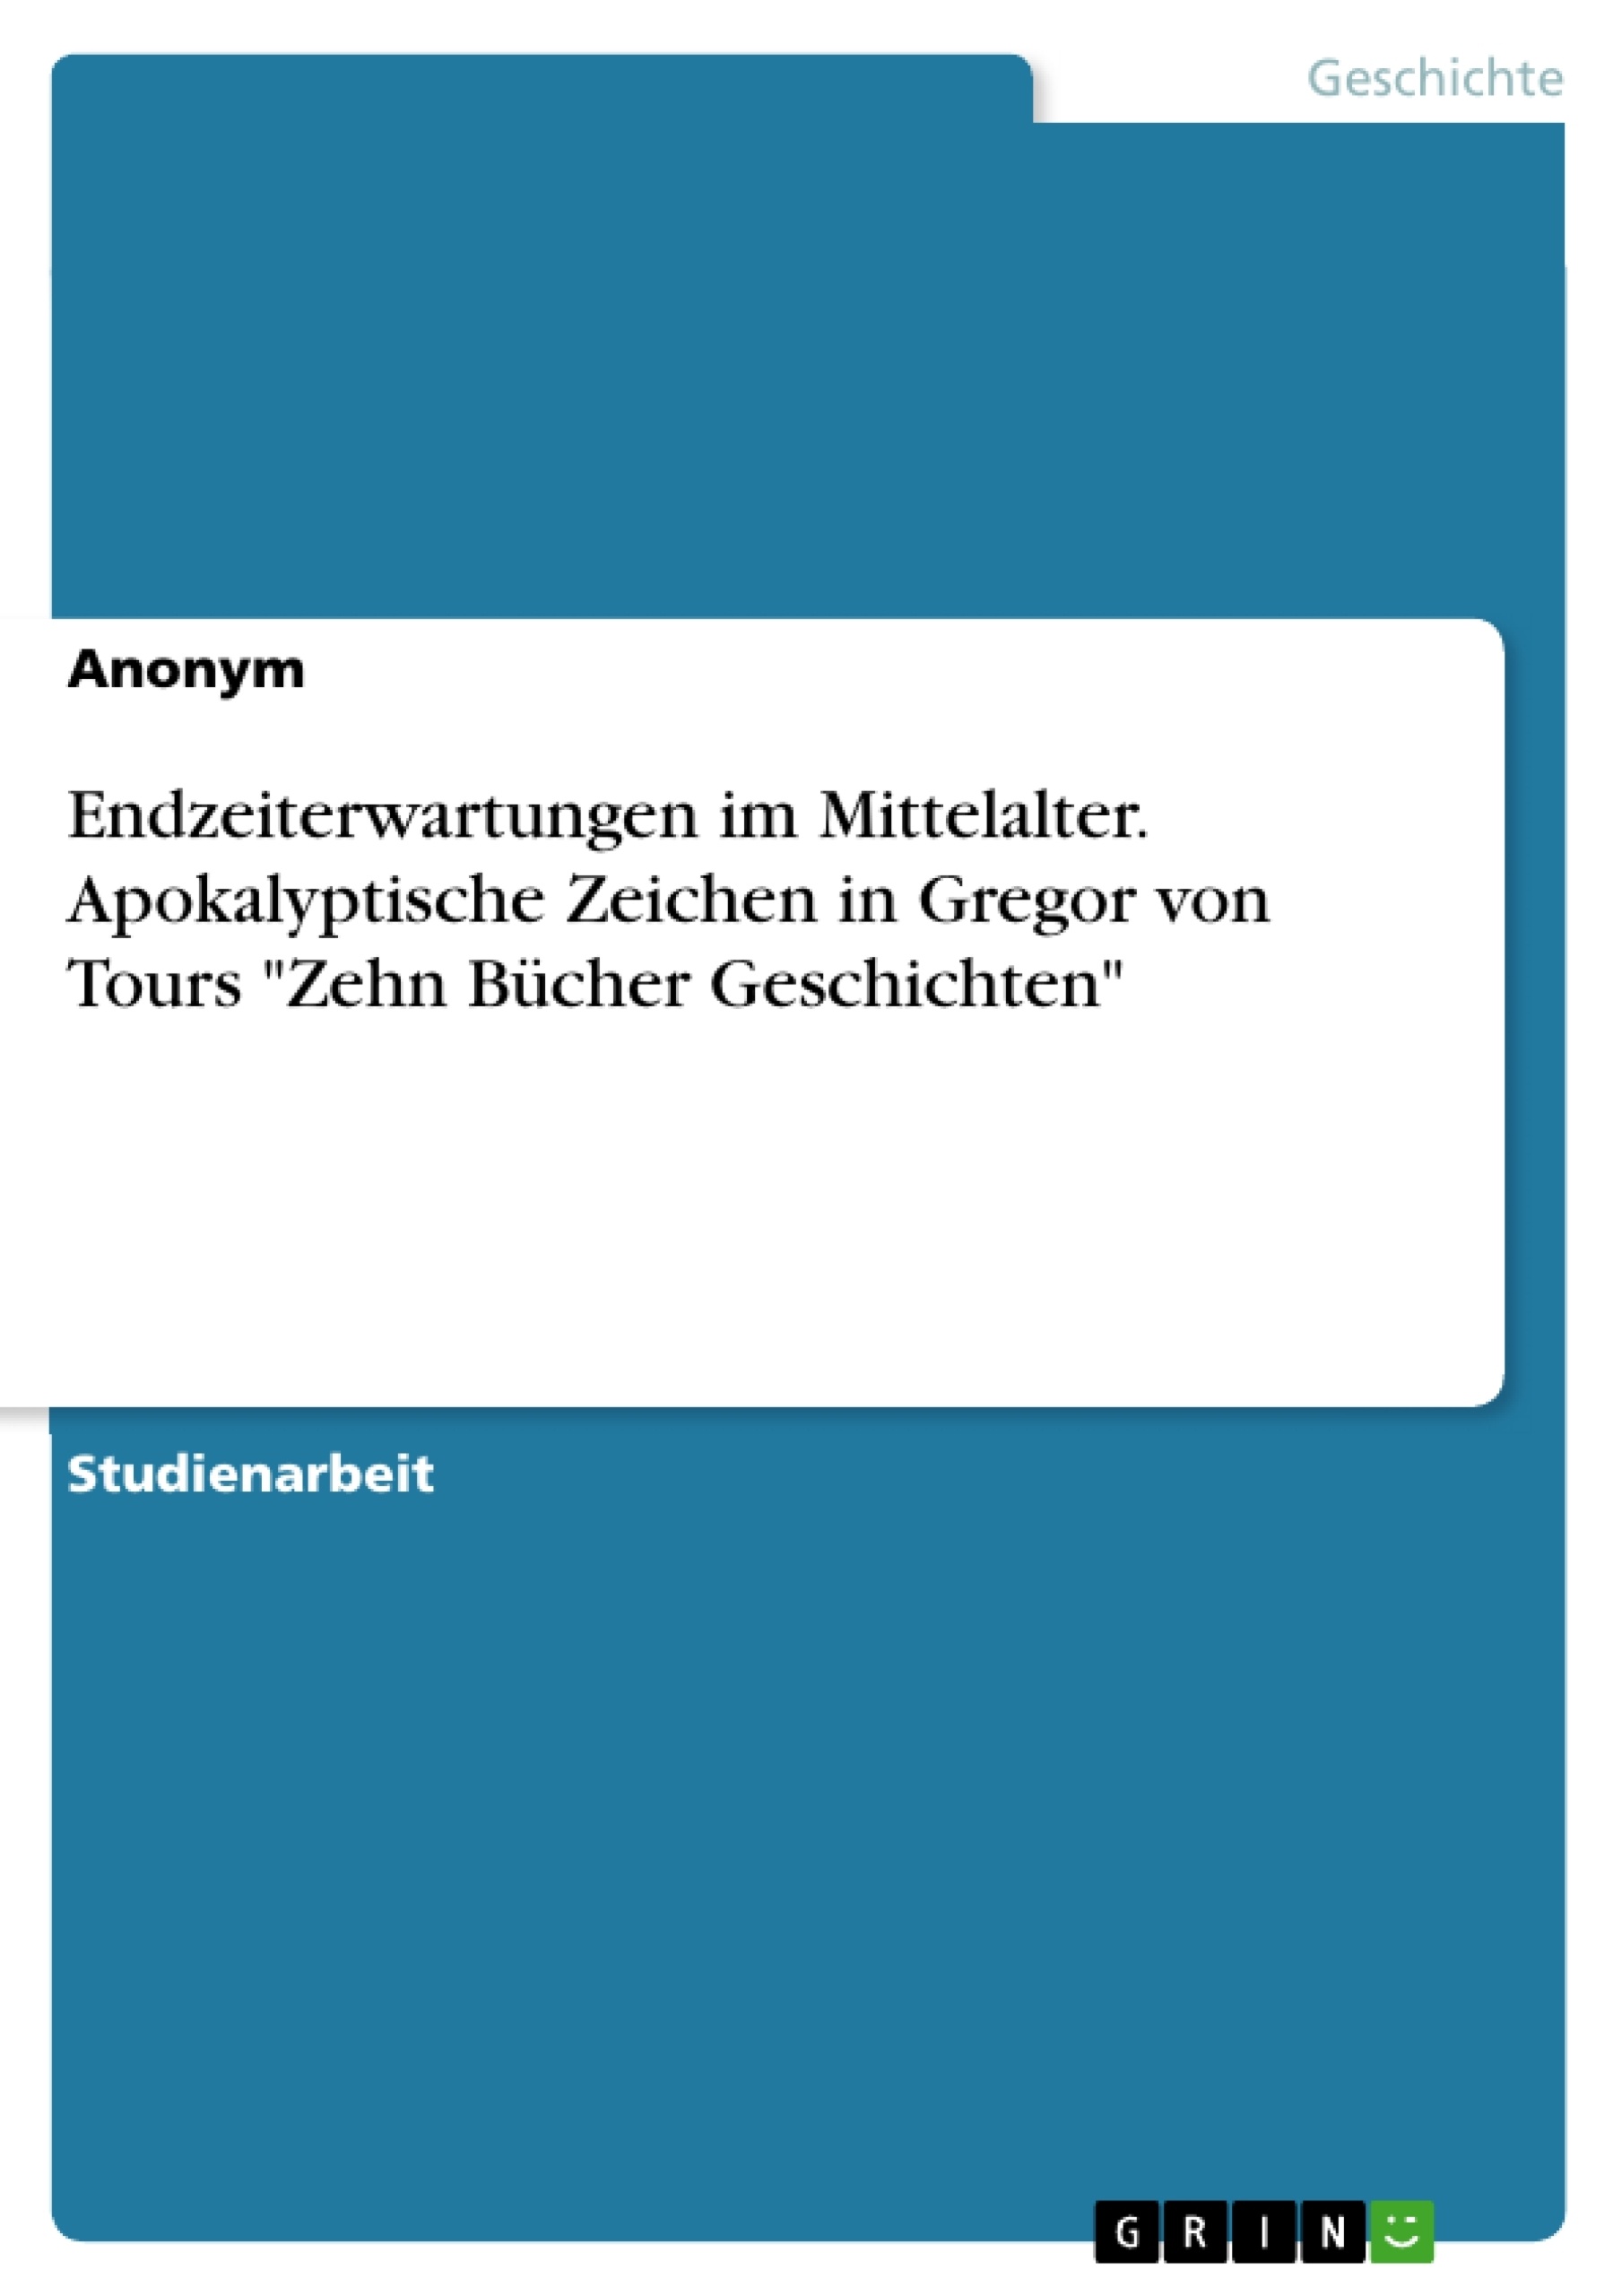 Title: Endzeiterwartungen im Mittelalter. Apokalyptische Zeichen in Gregor von Tours "Zehn Bücher Geschichten"